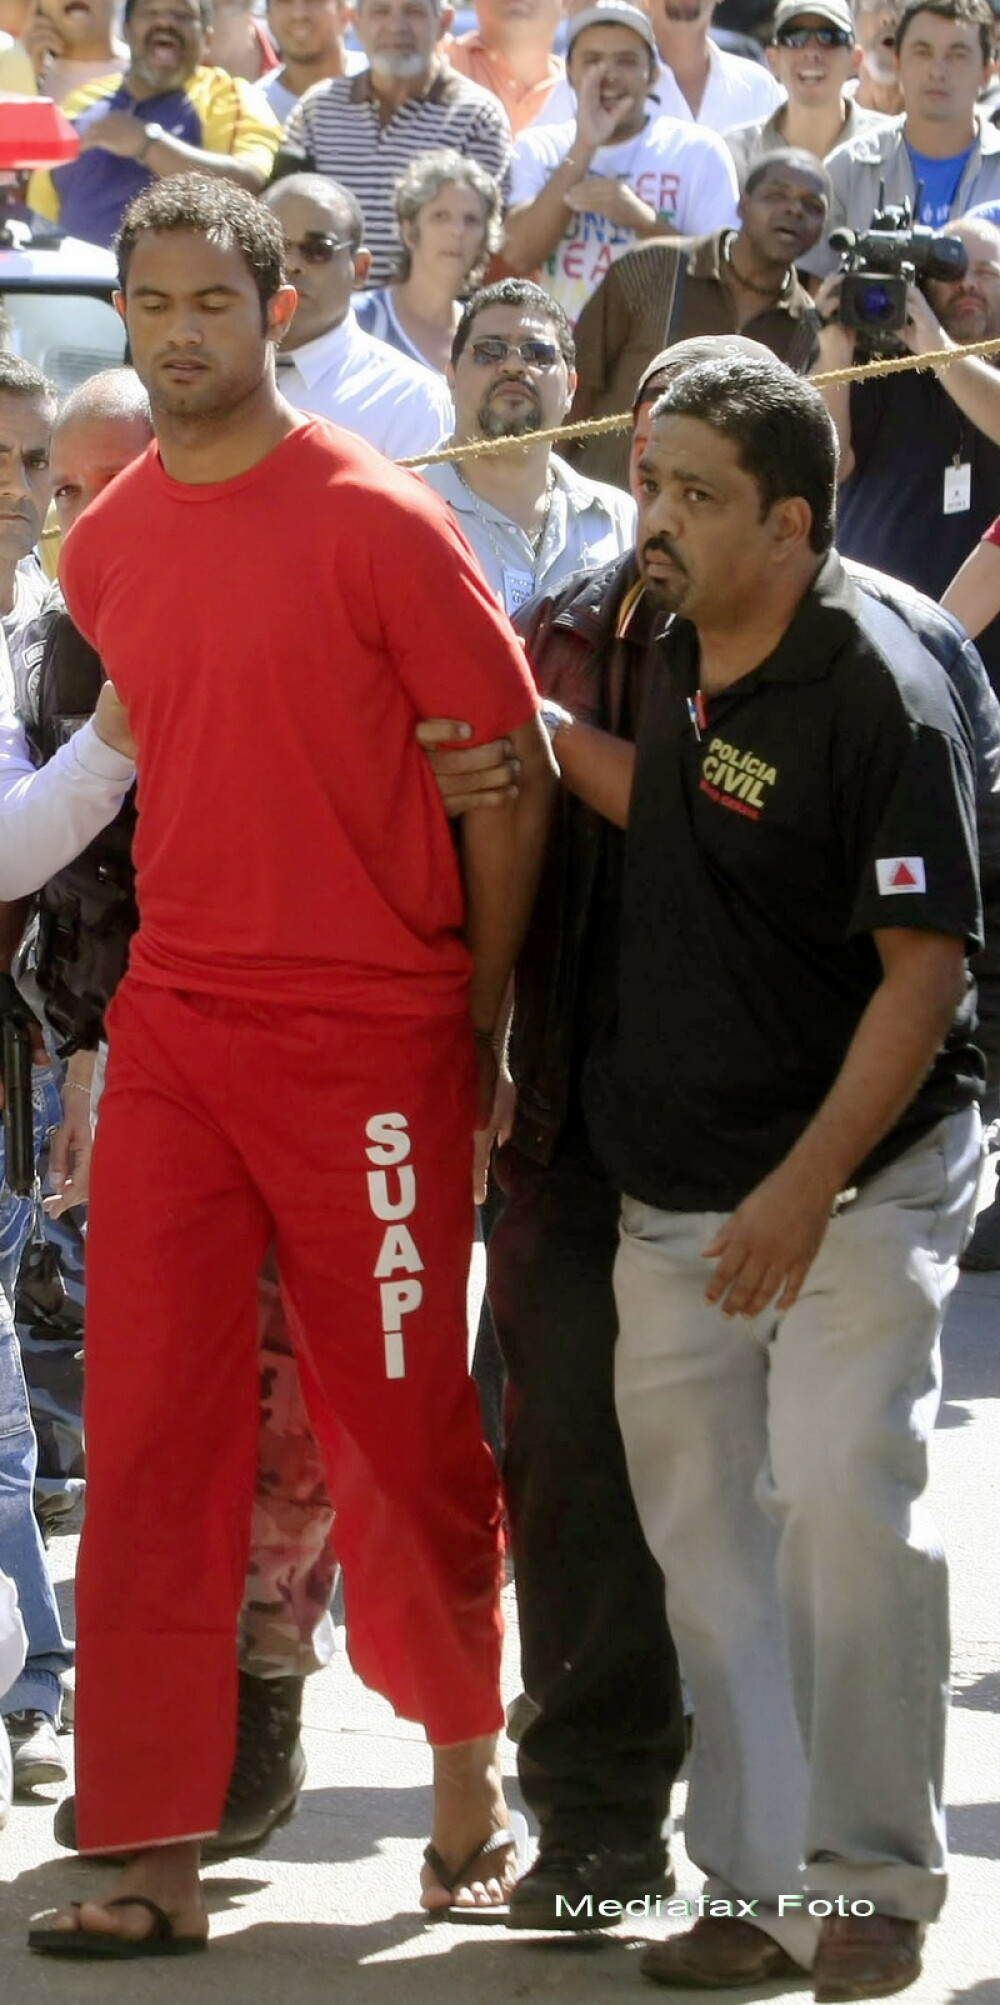 Incepe procesul fotbalistului brazilian Bruno, acuzat ca a ordonat uciderea unei foste iubite - Imaginea 3